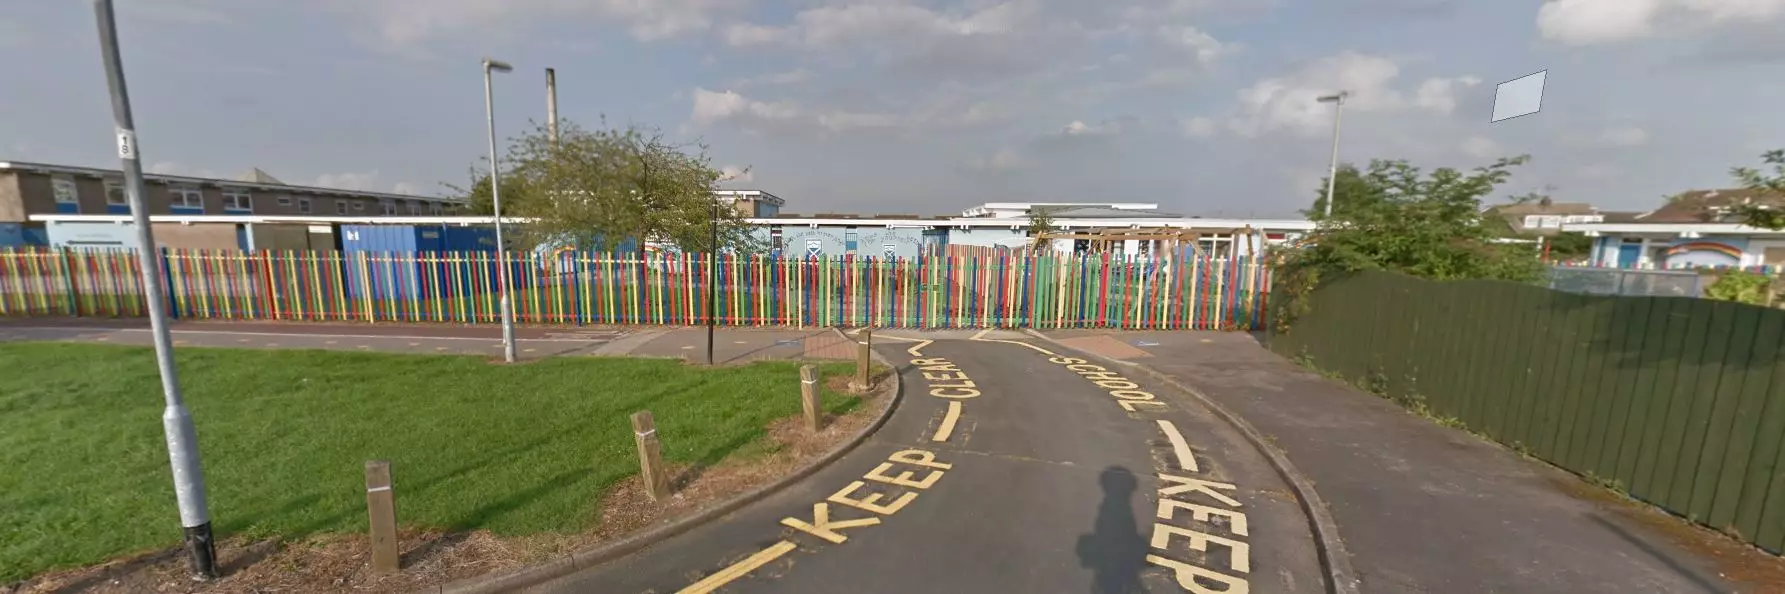 St Andrew's Primary School in Bransholme, Hull.